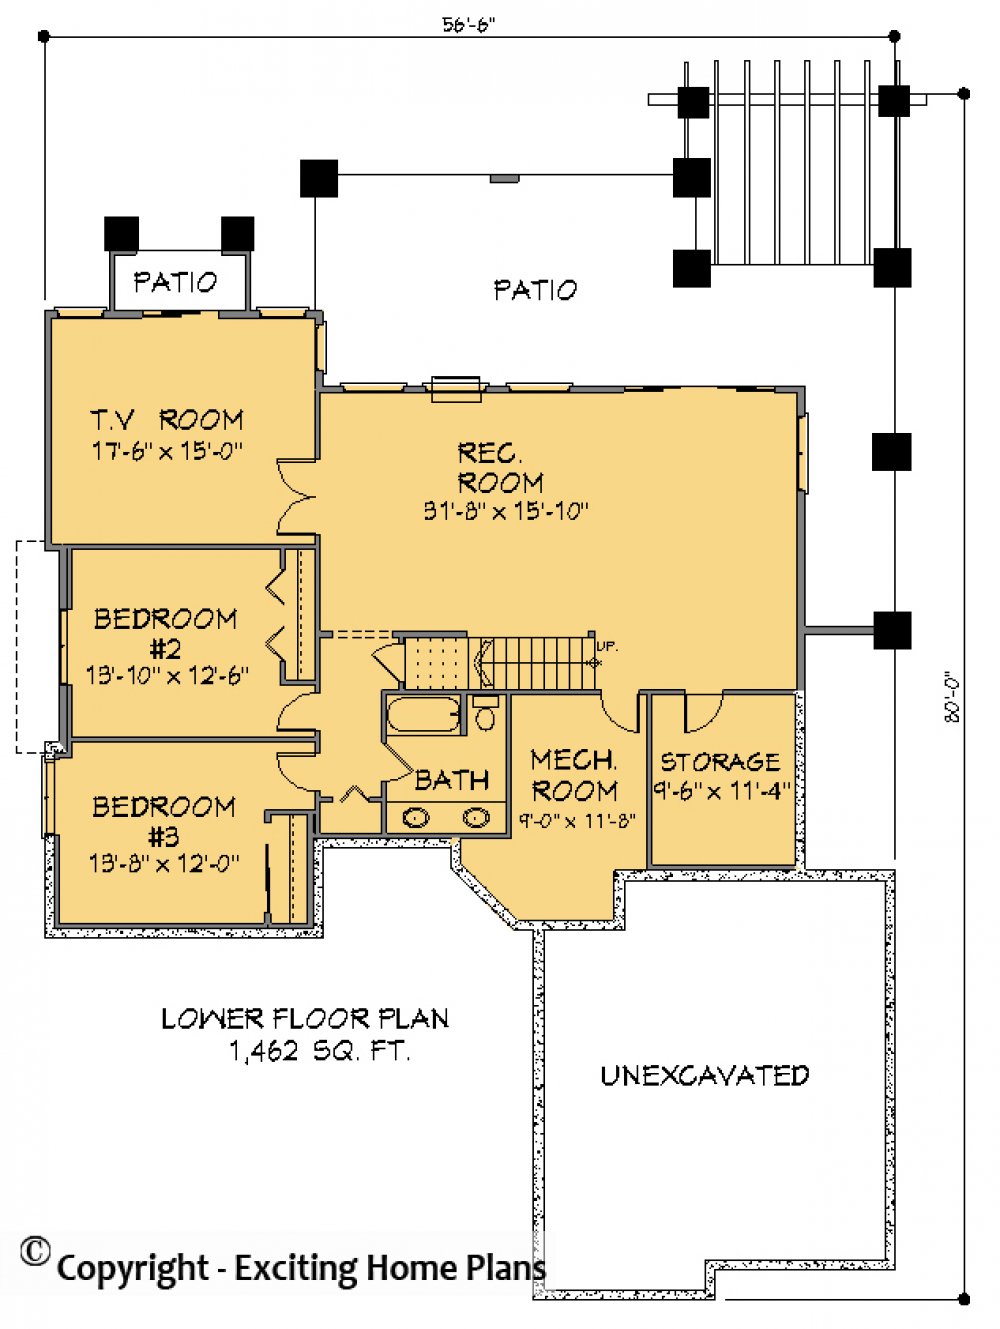 House Plan E1413-10 Lower Floor Plan